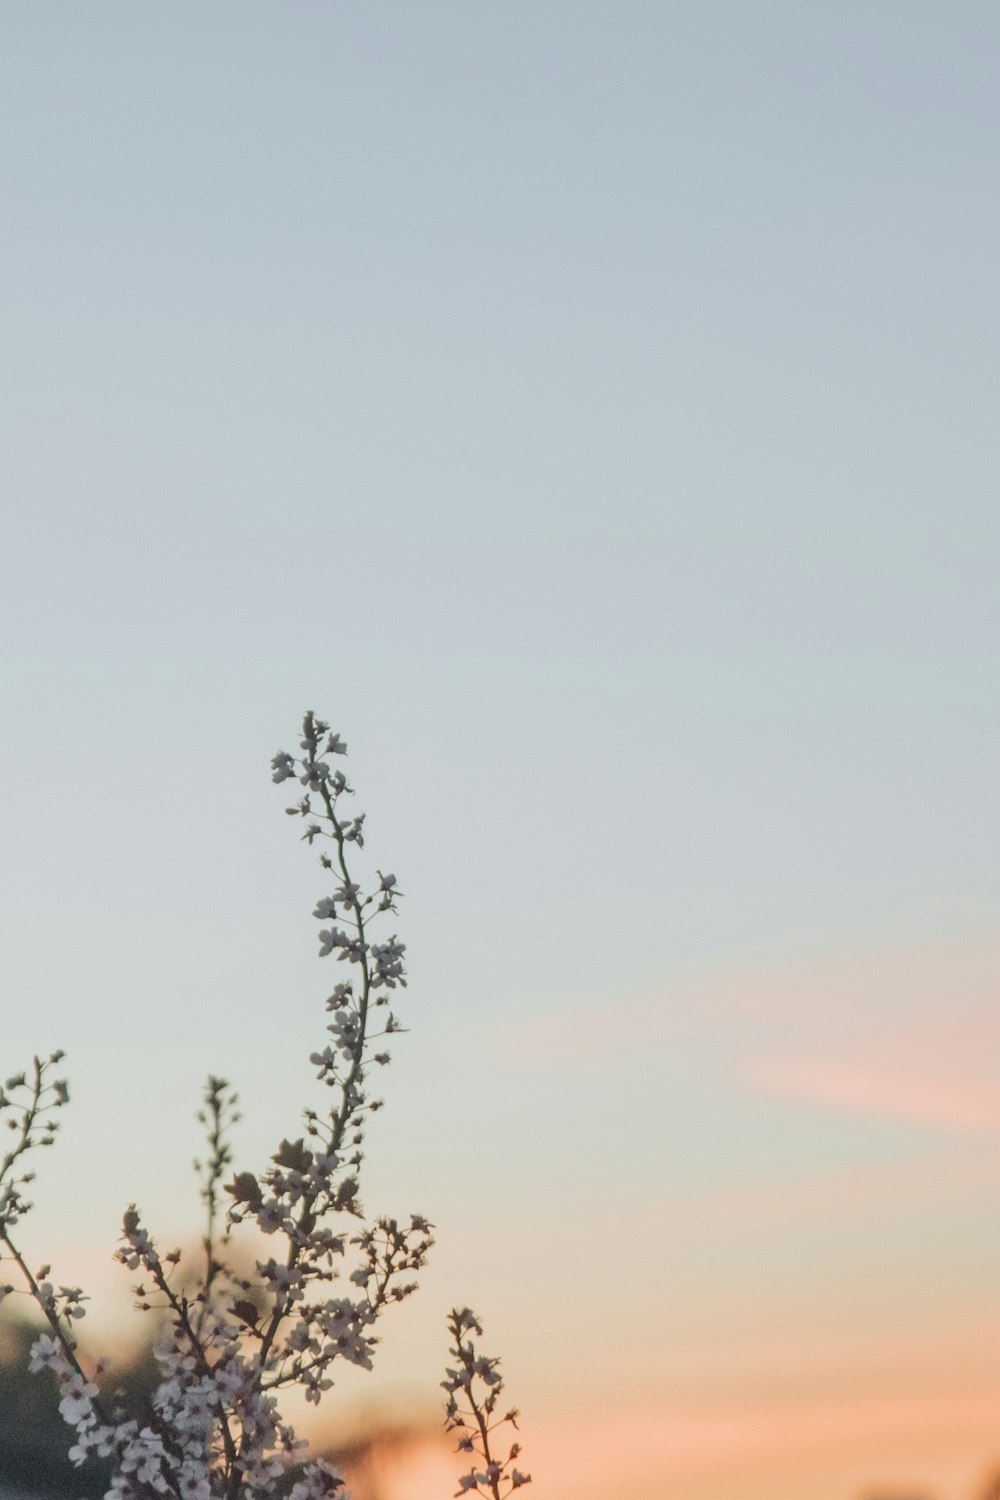 황금 시간에 푸른 하늘 아래 하얀 벚꽃 나무